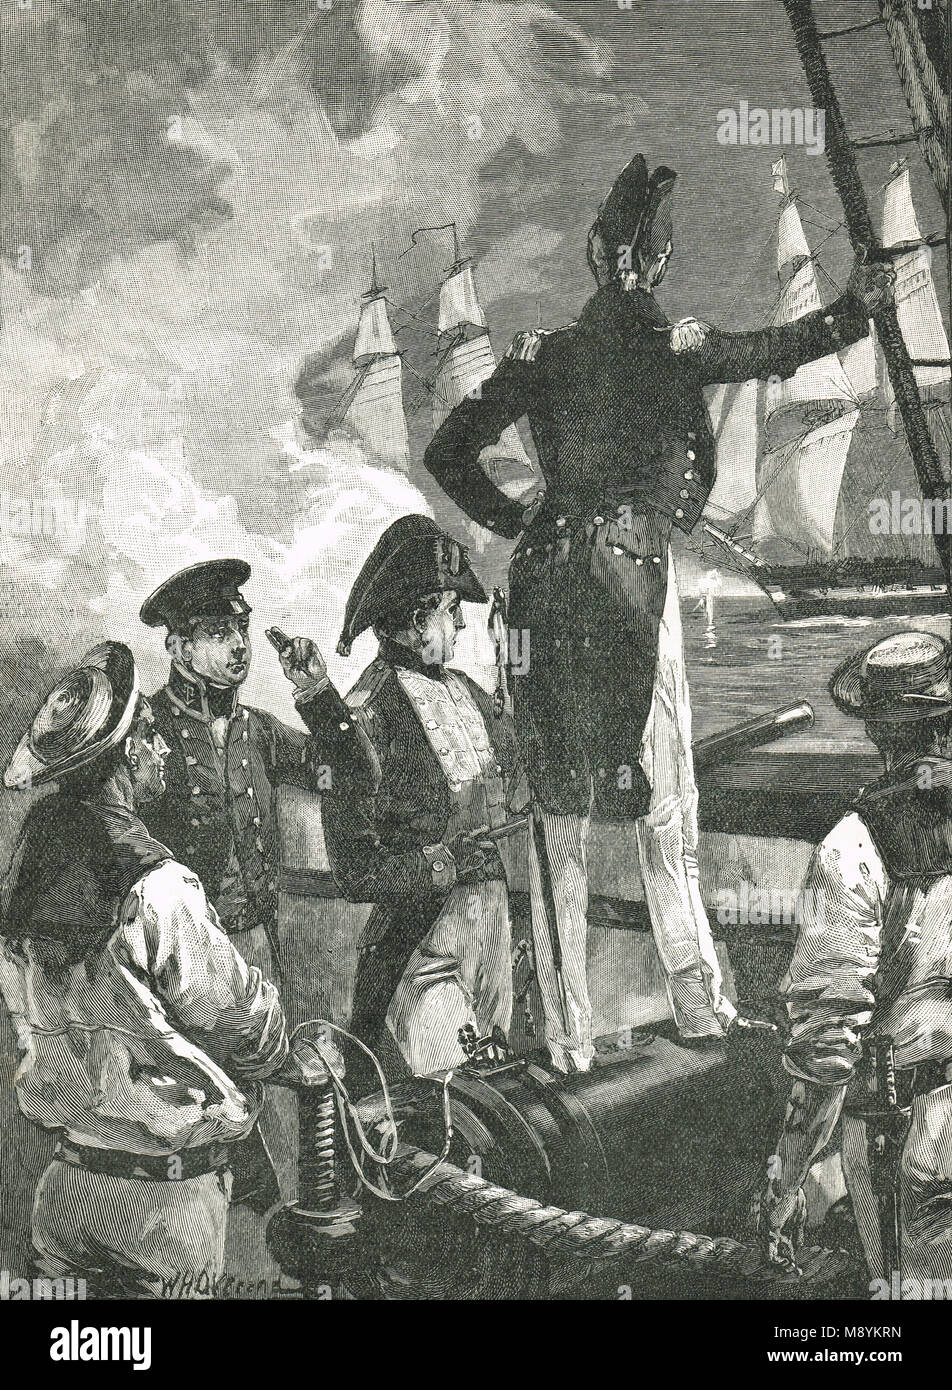 Le capitaine William Walpole interceptant le navires de la Duc de Saldanha, 16 janvier 1829, au cours de la guerre des libéraux au Portugal de 1828 à 1834 Banque D'Images